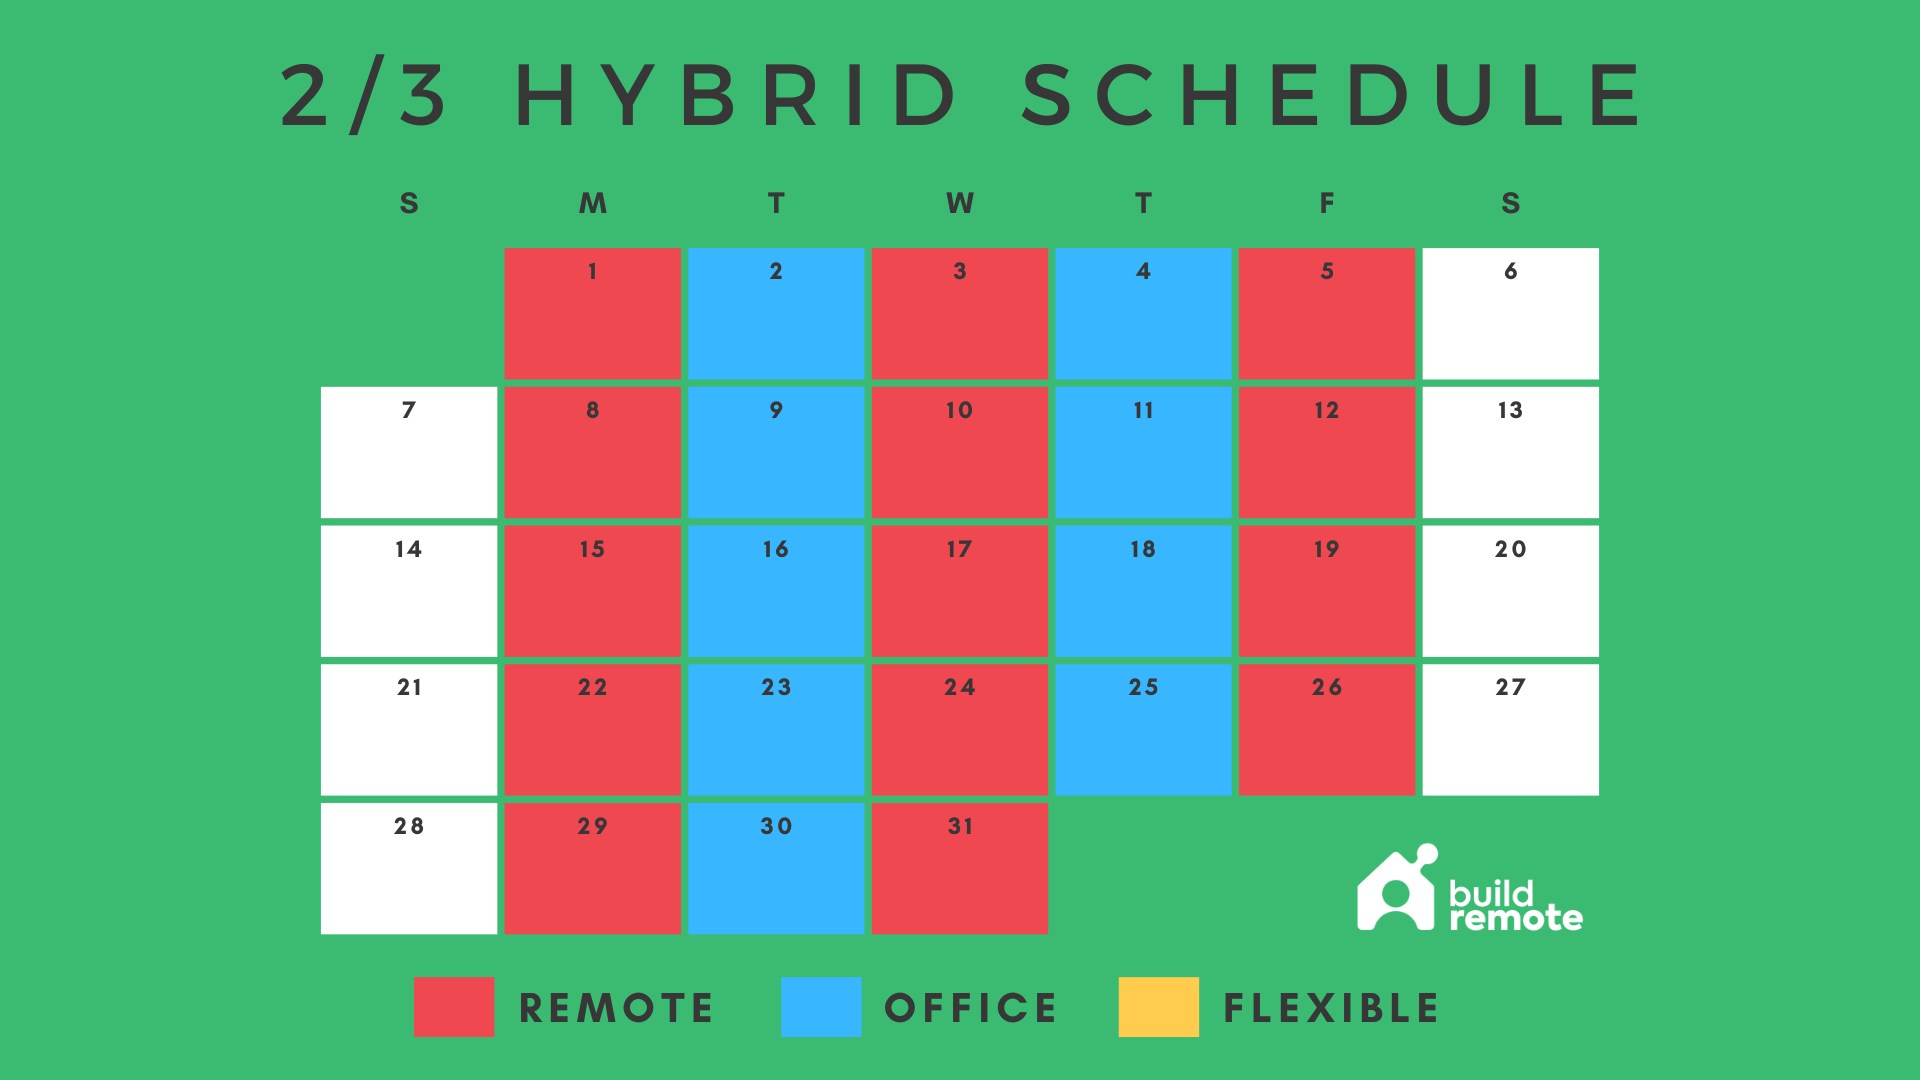 2/3 hybrid work schedule